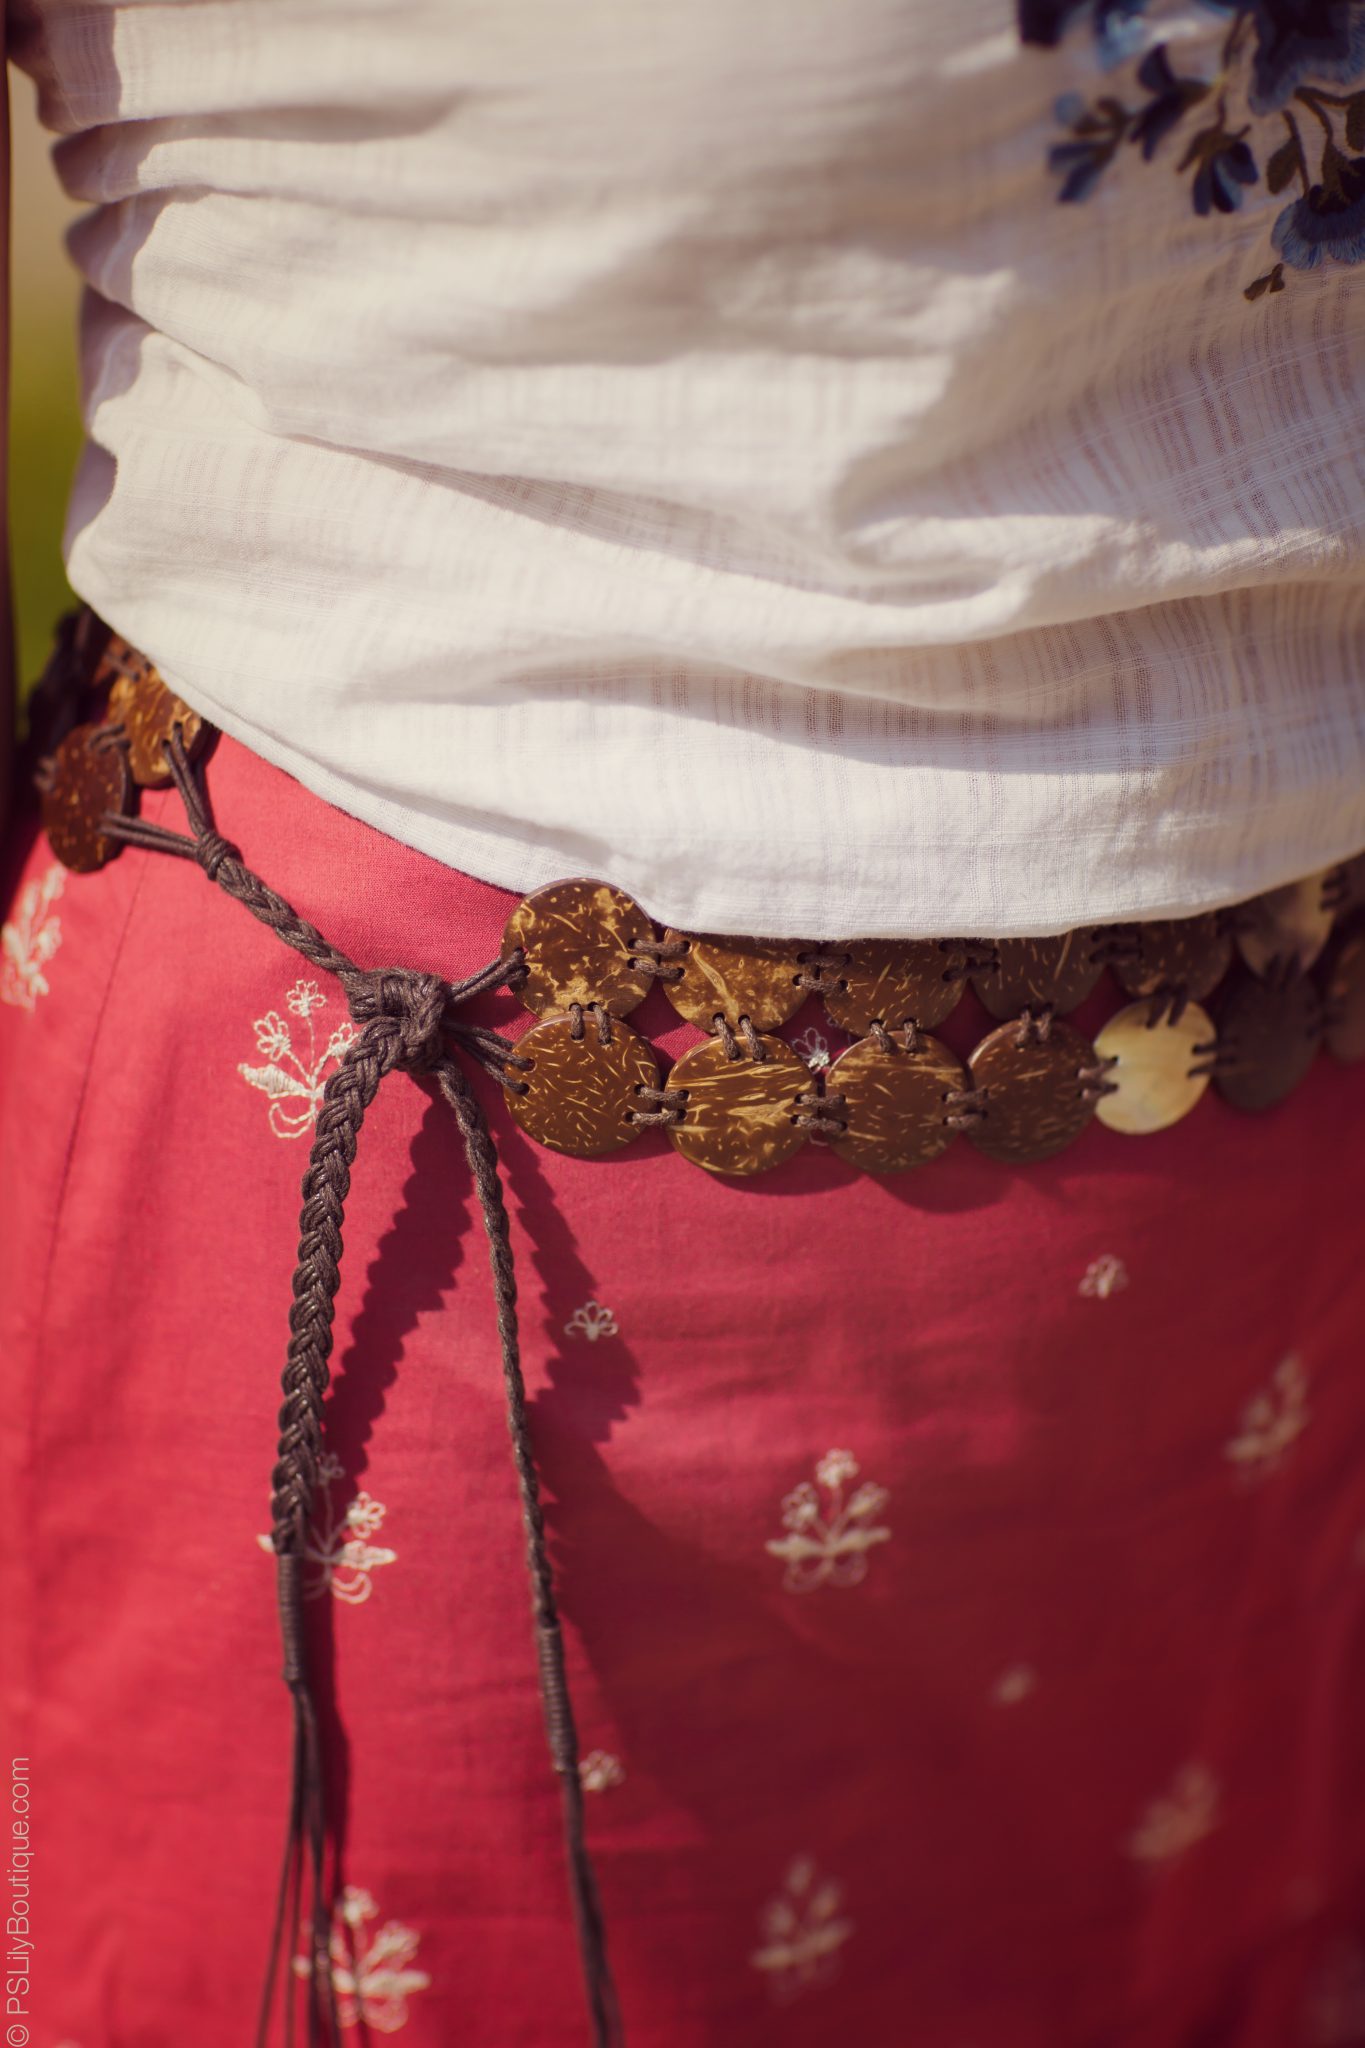 instagram-pslilyboutique-los-angeles-fashion-blogger-vintage-mother-of-pearl-shells-belt